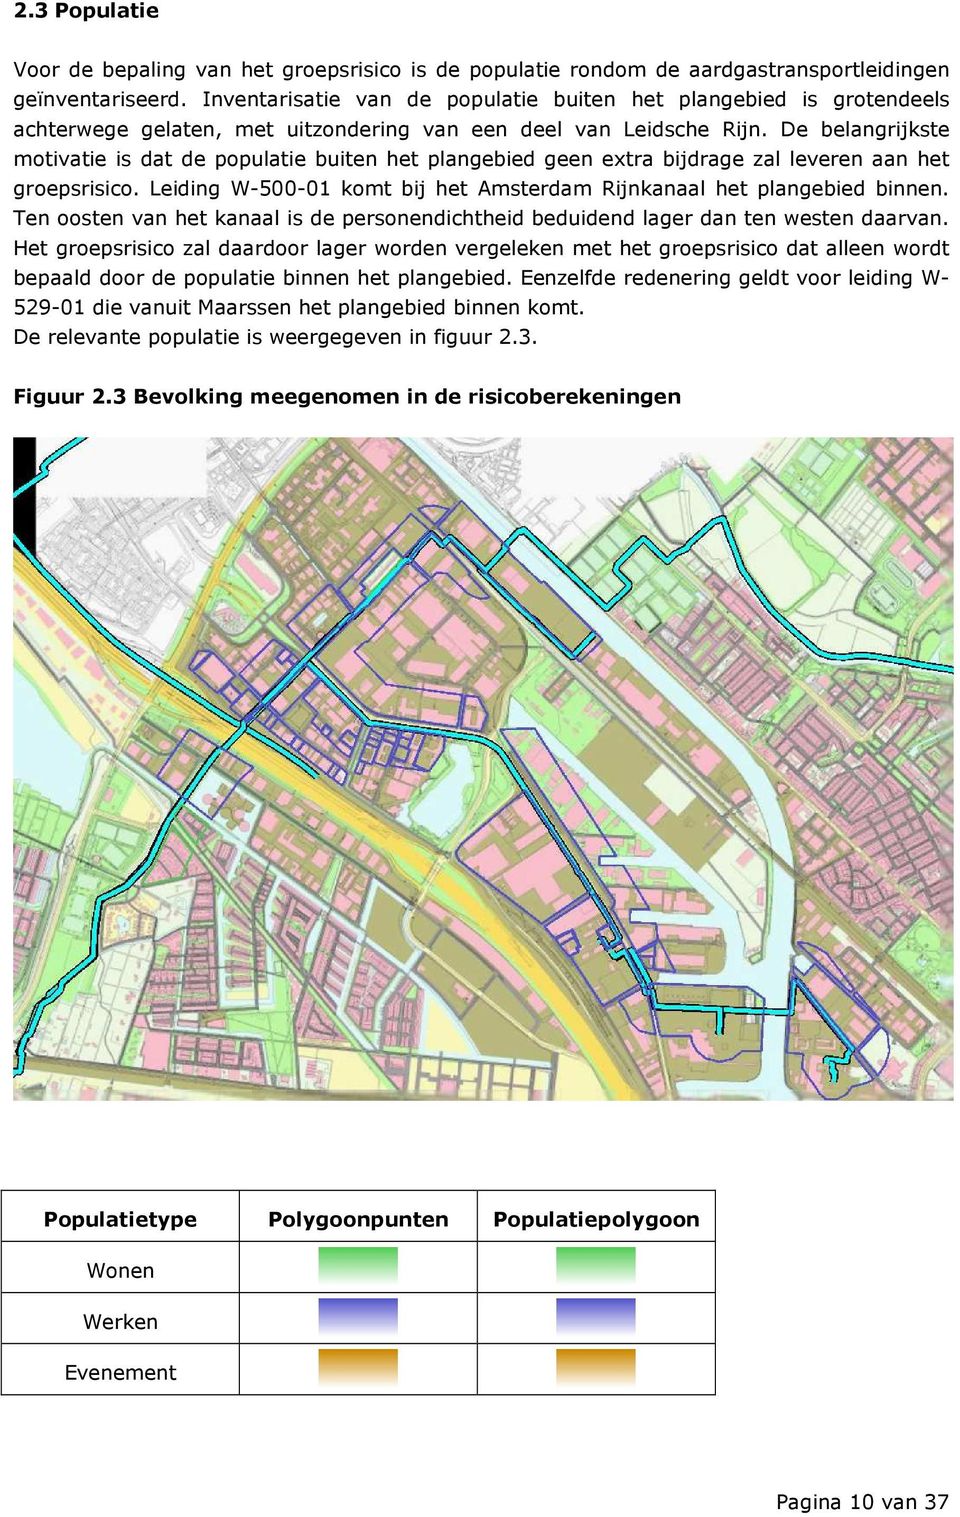 De belangrijkste motivatie is dat de populatie buiten het plangebied geen extra bijdrage zal leveren aan het groepsrisico. Leiding W-500-01 komt bij het Amsterdam Rijnkanaal het plangebied binnen.